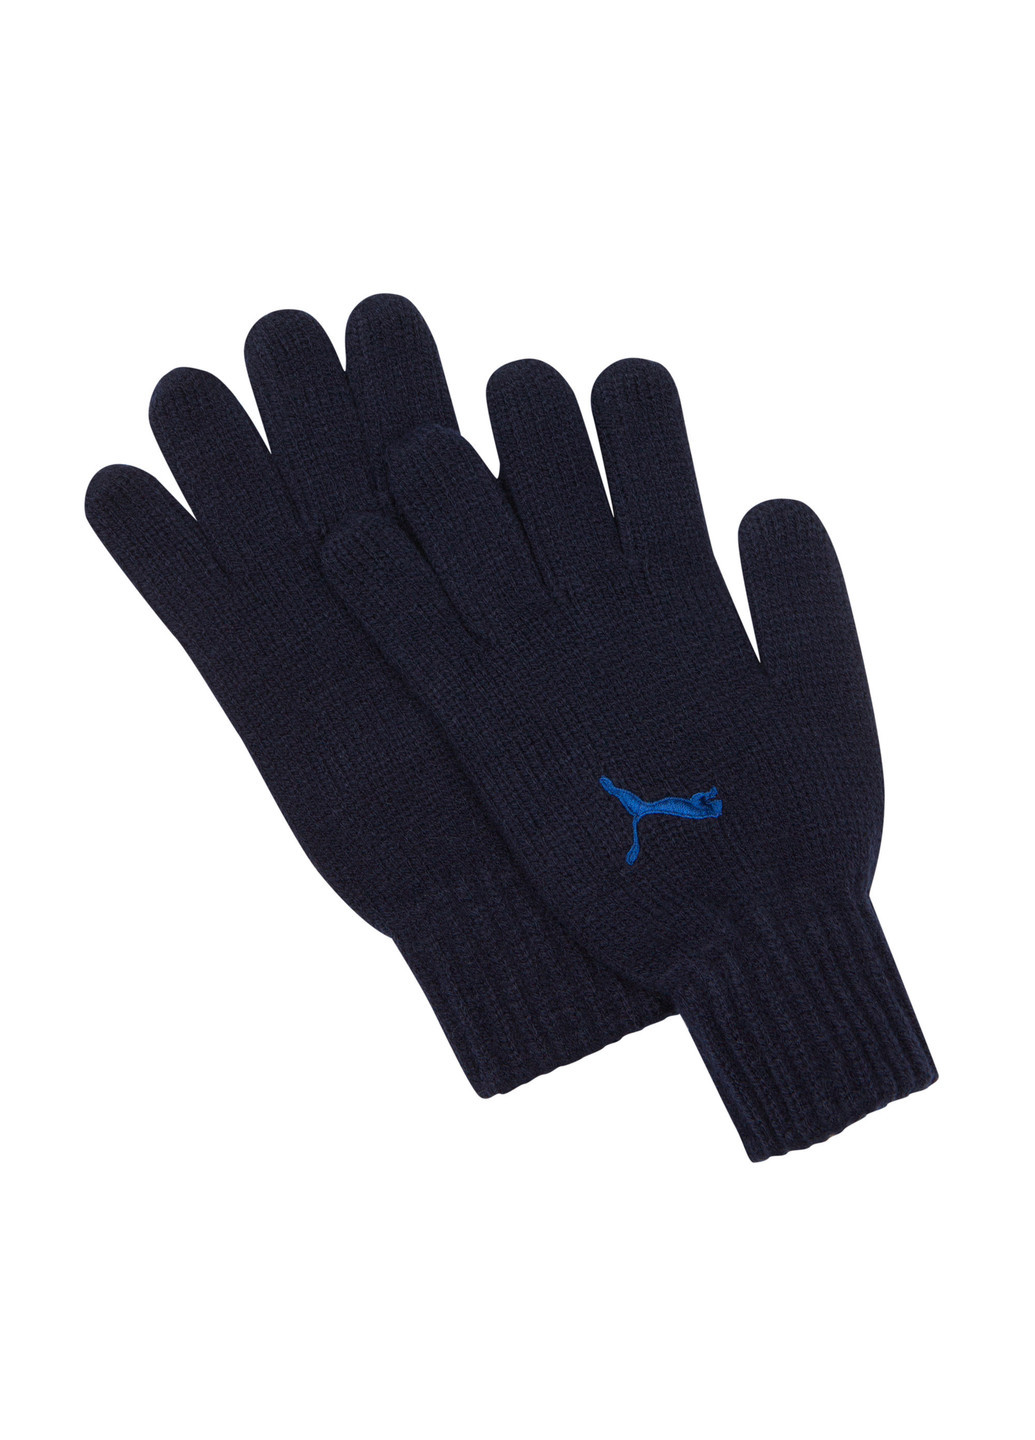 Перчатки Puma Fundamentals Knit Gloves однотонные синие спортивные